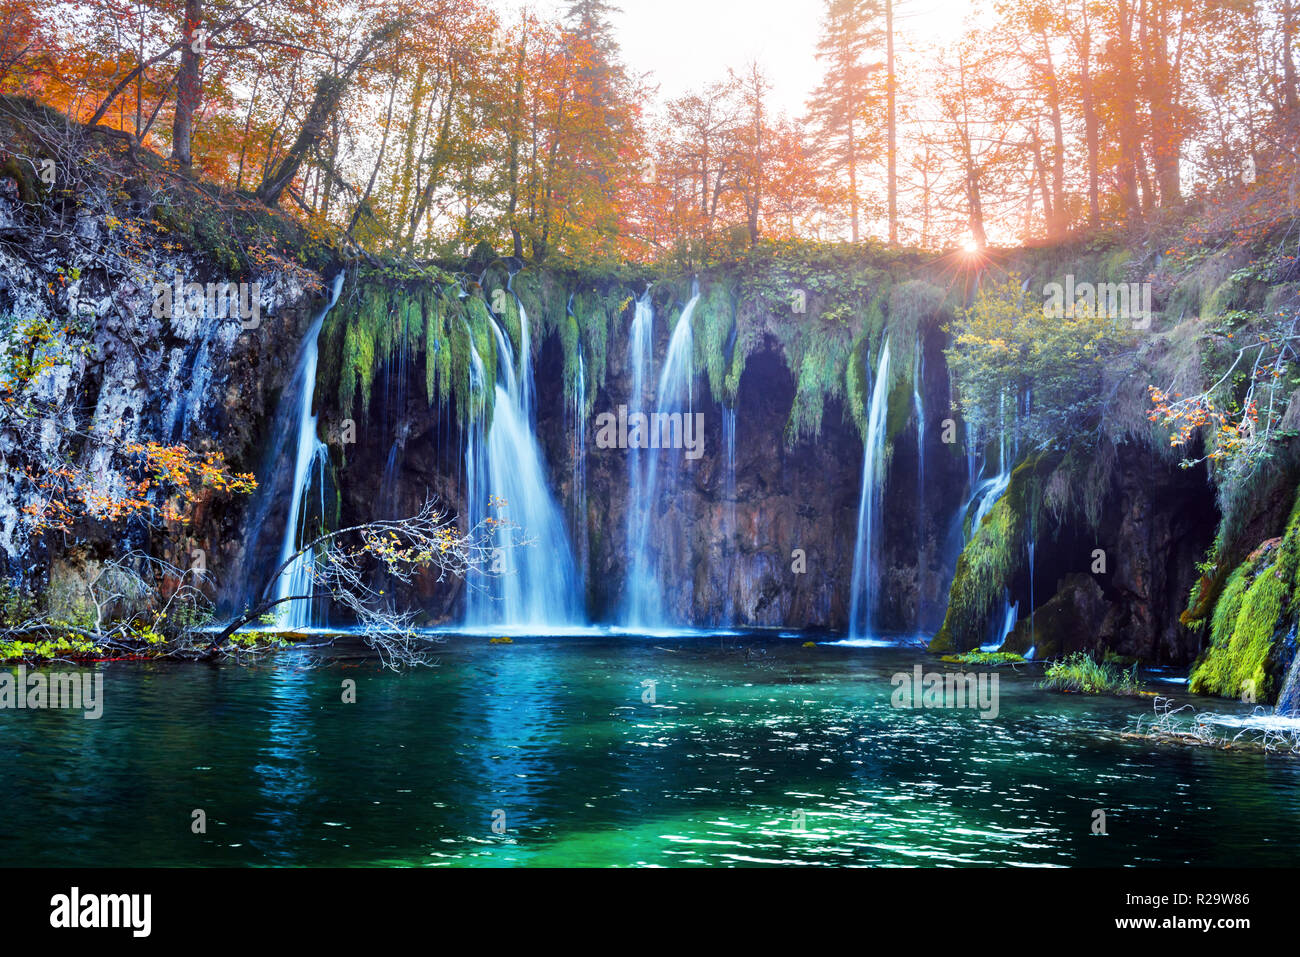 Incredibile cascata con pura acqua blu nel Parco Nazionale dei laghi di Plitvice. Orange autunno foresta sul background. Il parco nazionale di Plitvice, Croazia. Fotografia di paesaggi Foto Stock